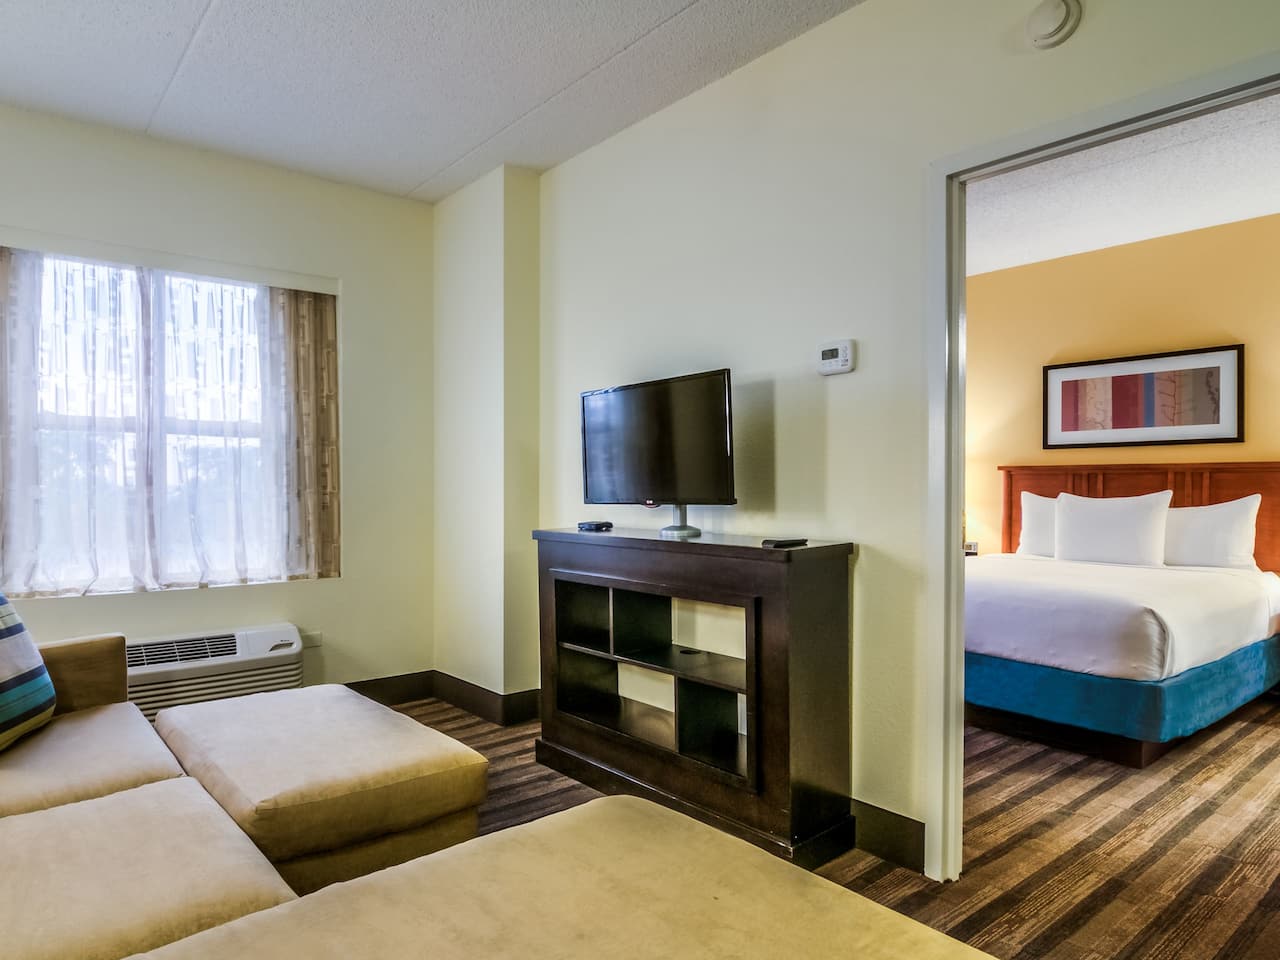 2 Bedroom Hotel Suites Chicago Il | Bedroom Suites